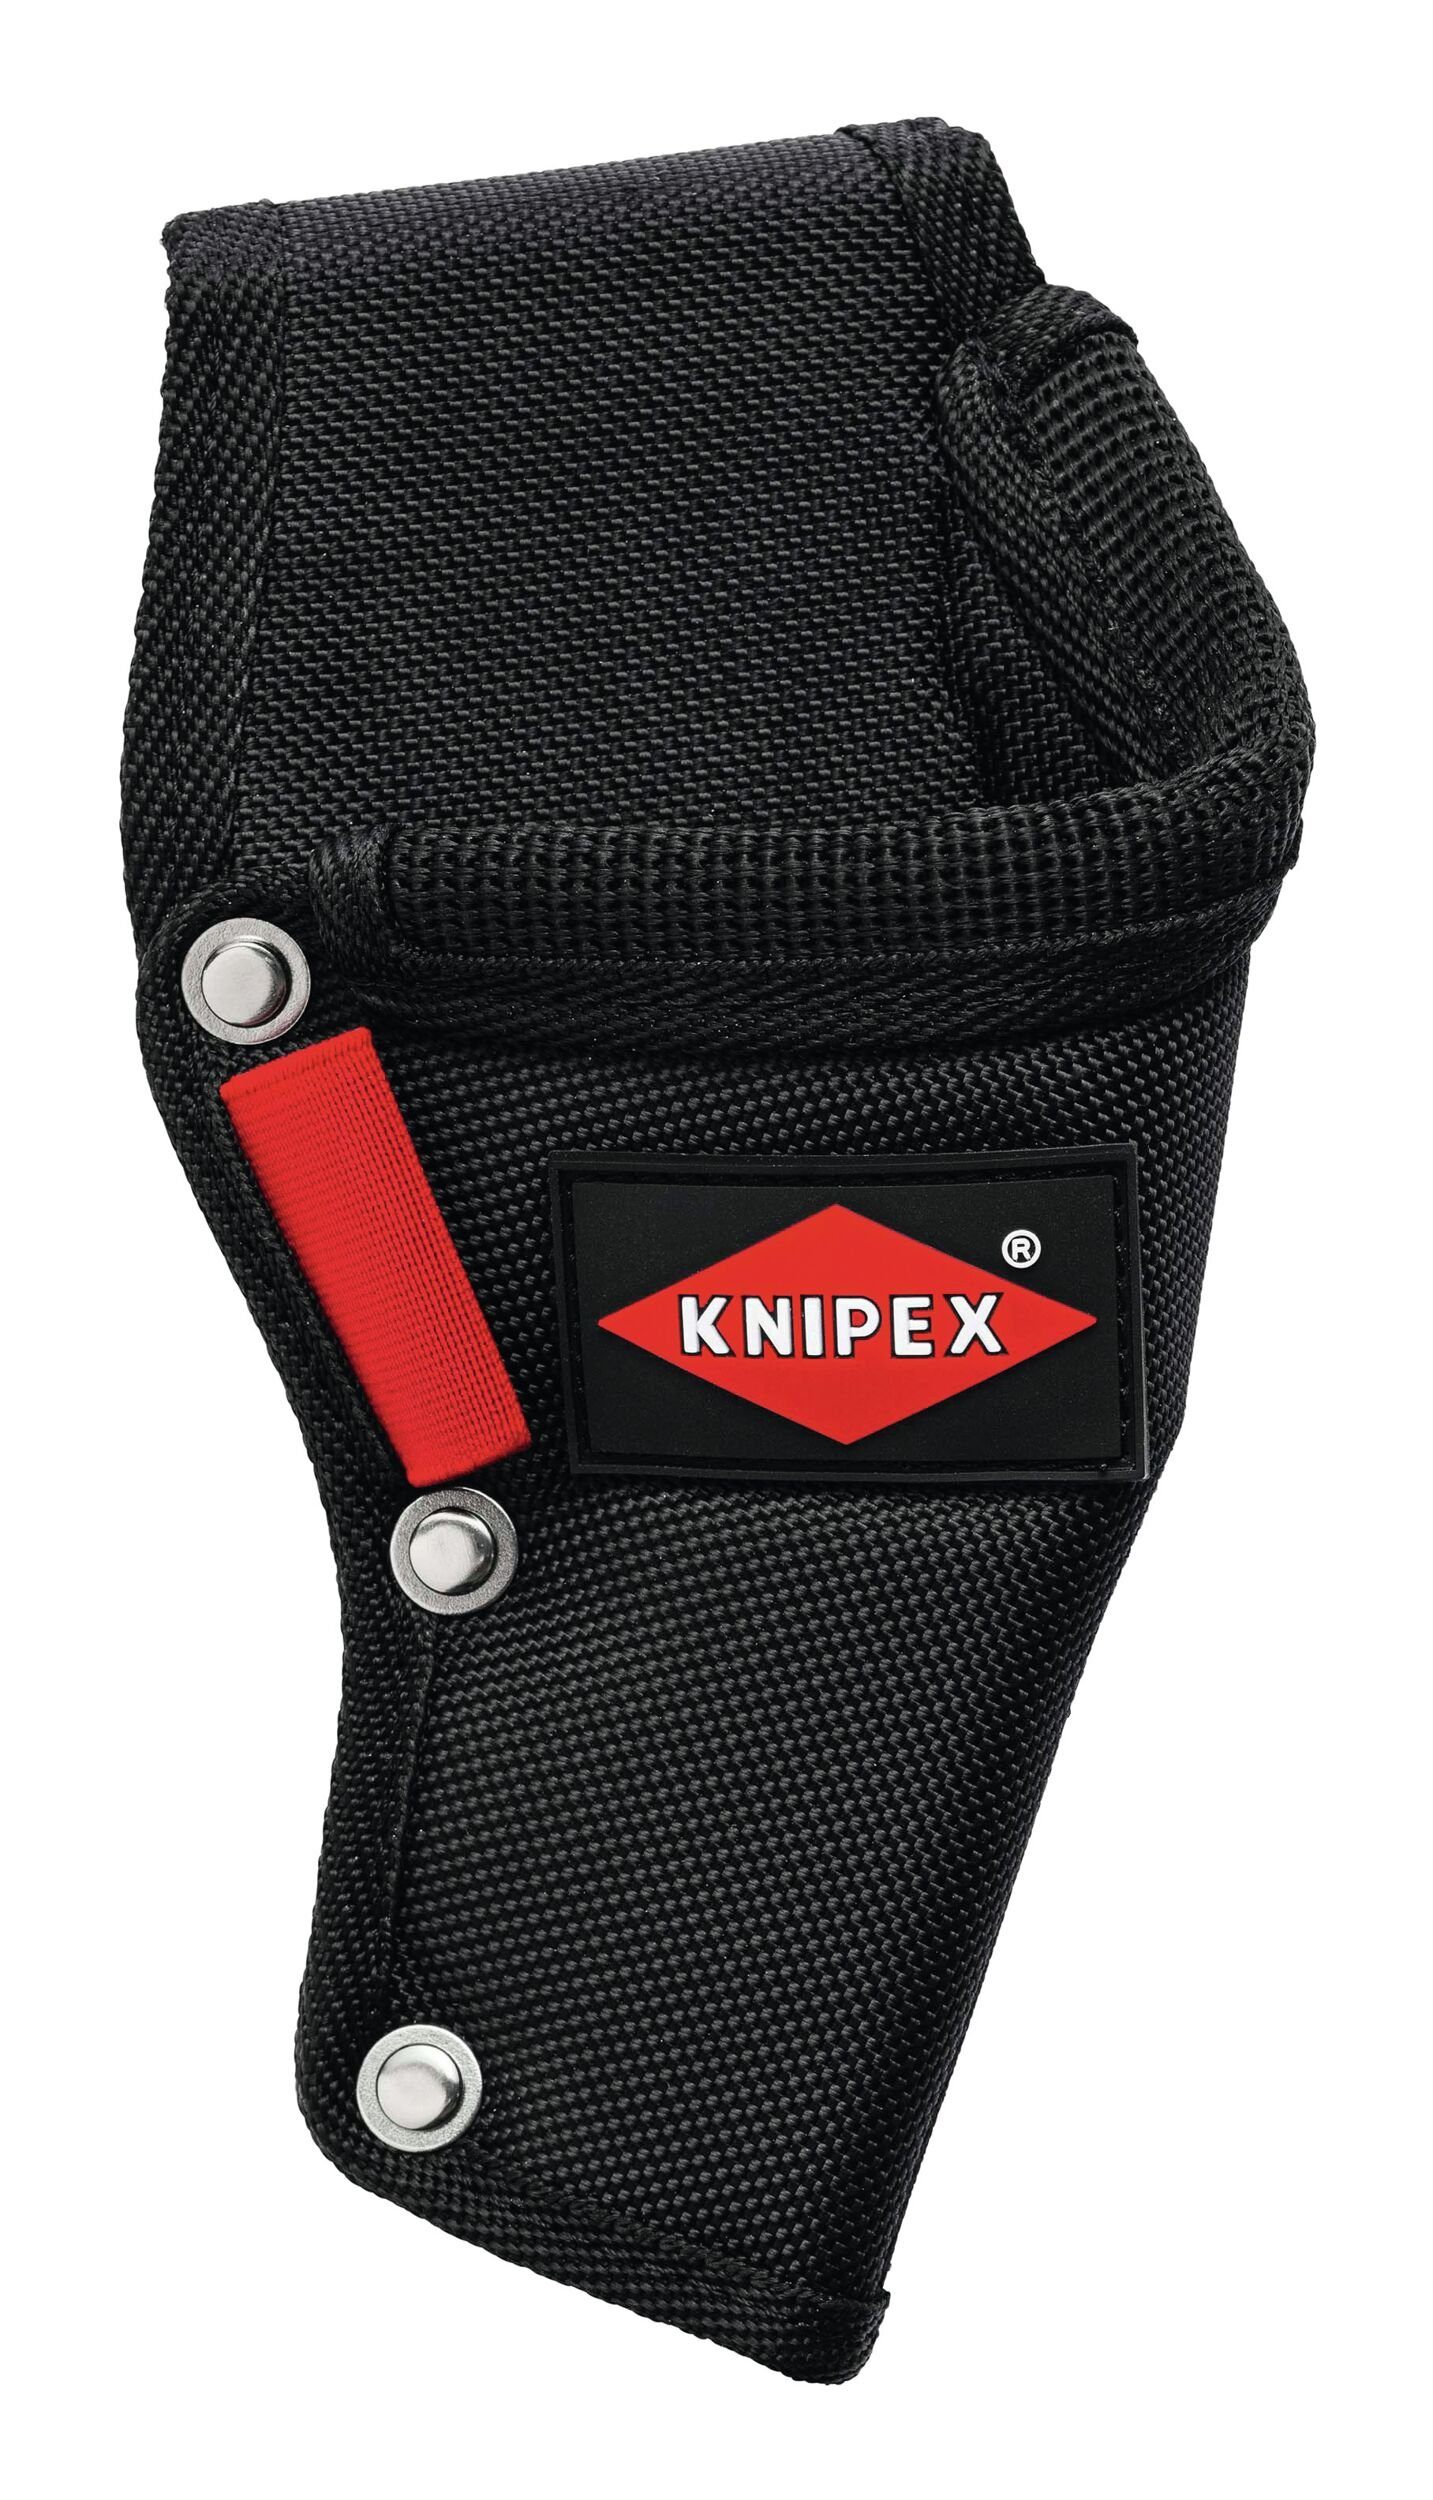 Knipex Elektrikerschere, Mehrzweck-Gürteltasche passend für Elektr-Schere 95 05 20 SB